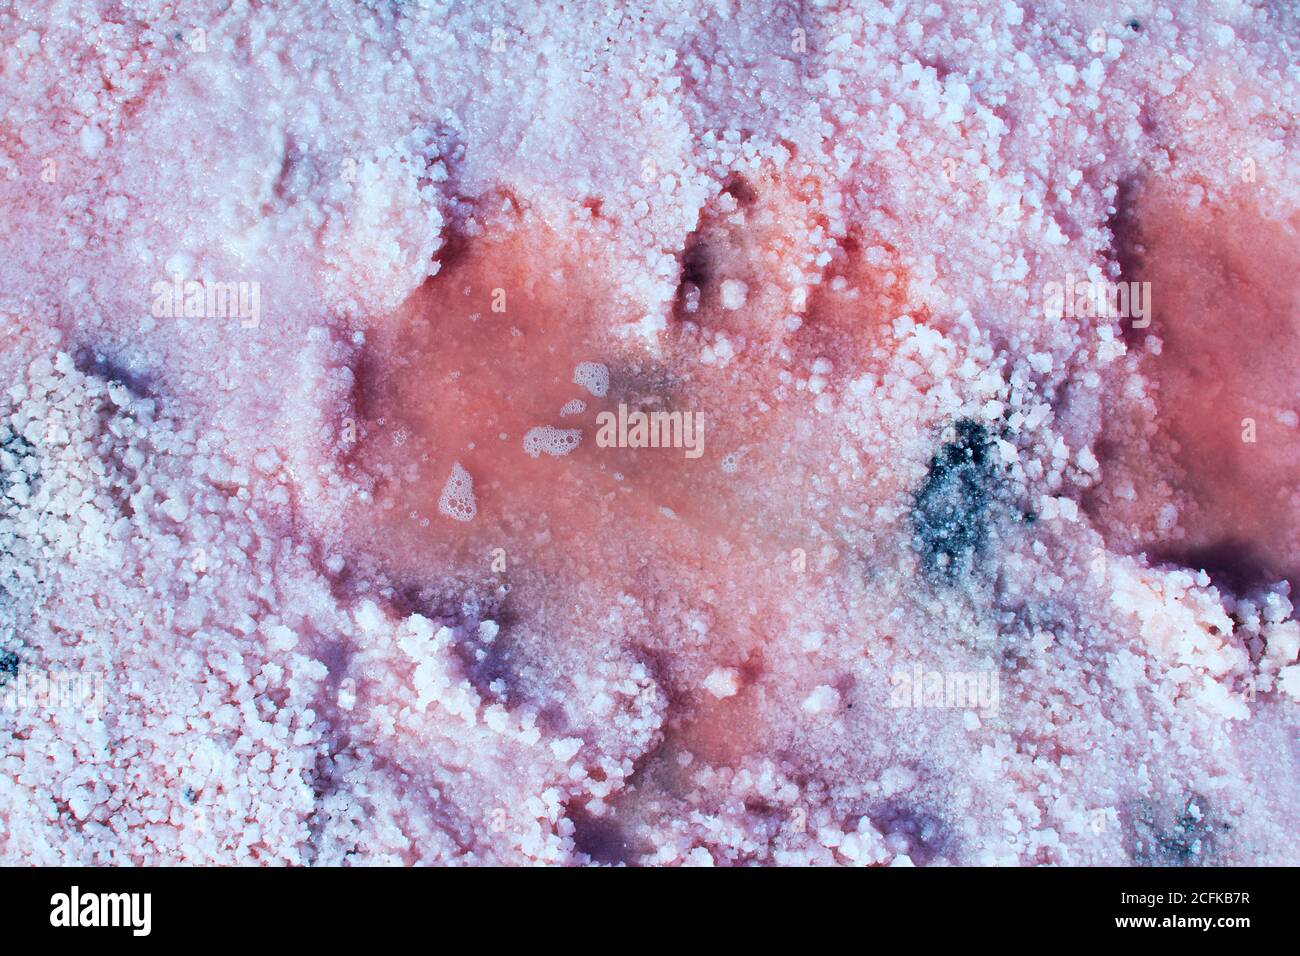 Salz, Sole und Schlamm aus rosa salzigen Sivash See in der Nähe Asowschen Meer, gefärbt von Mikroalgen Dunaliellasalina, Anreicherung des Wassers des Sees durch Beta-Carotin Stockfoto